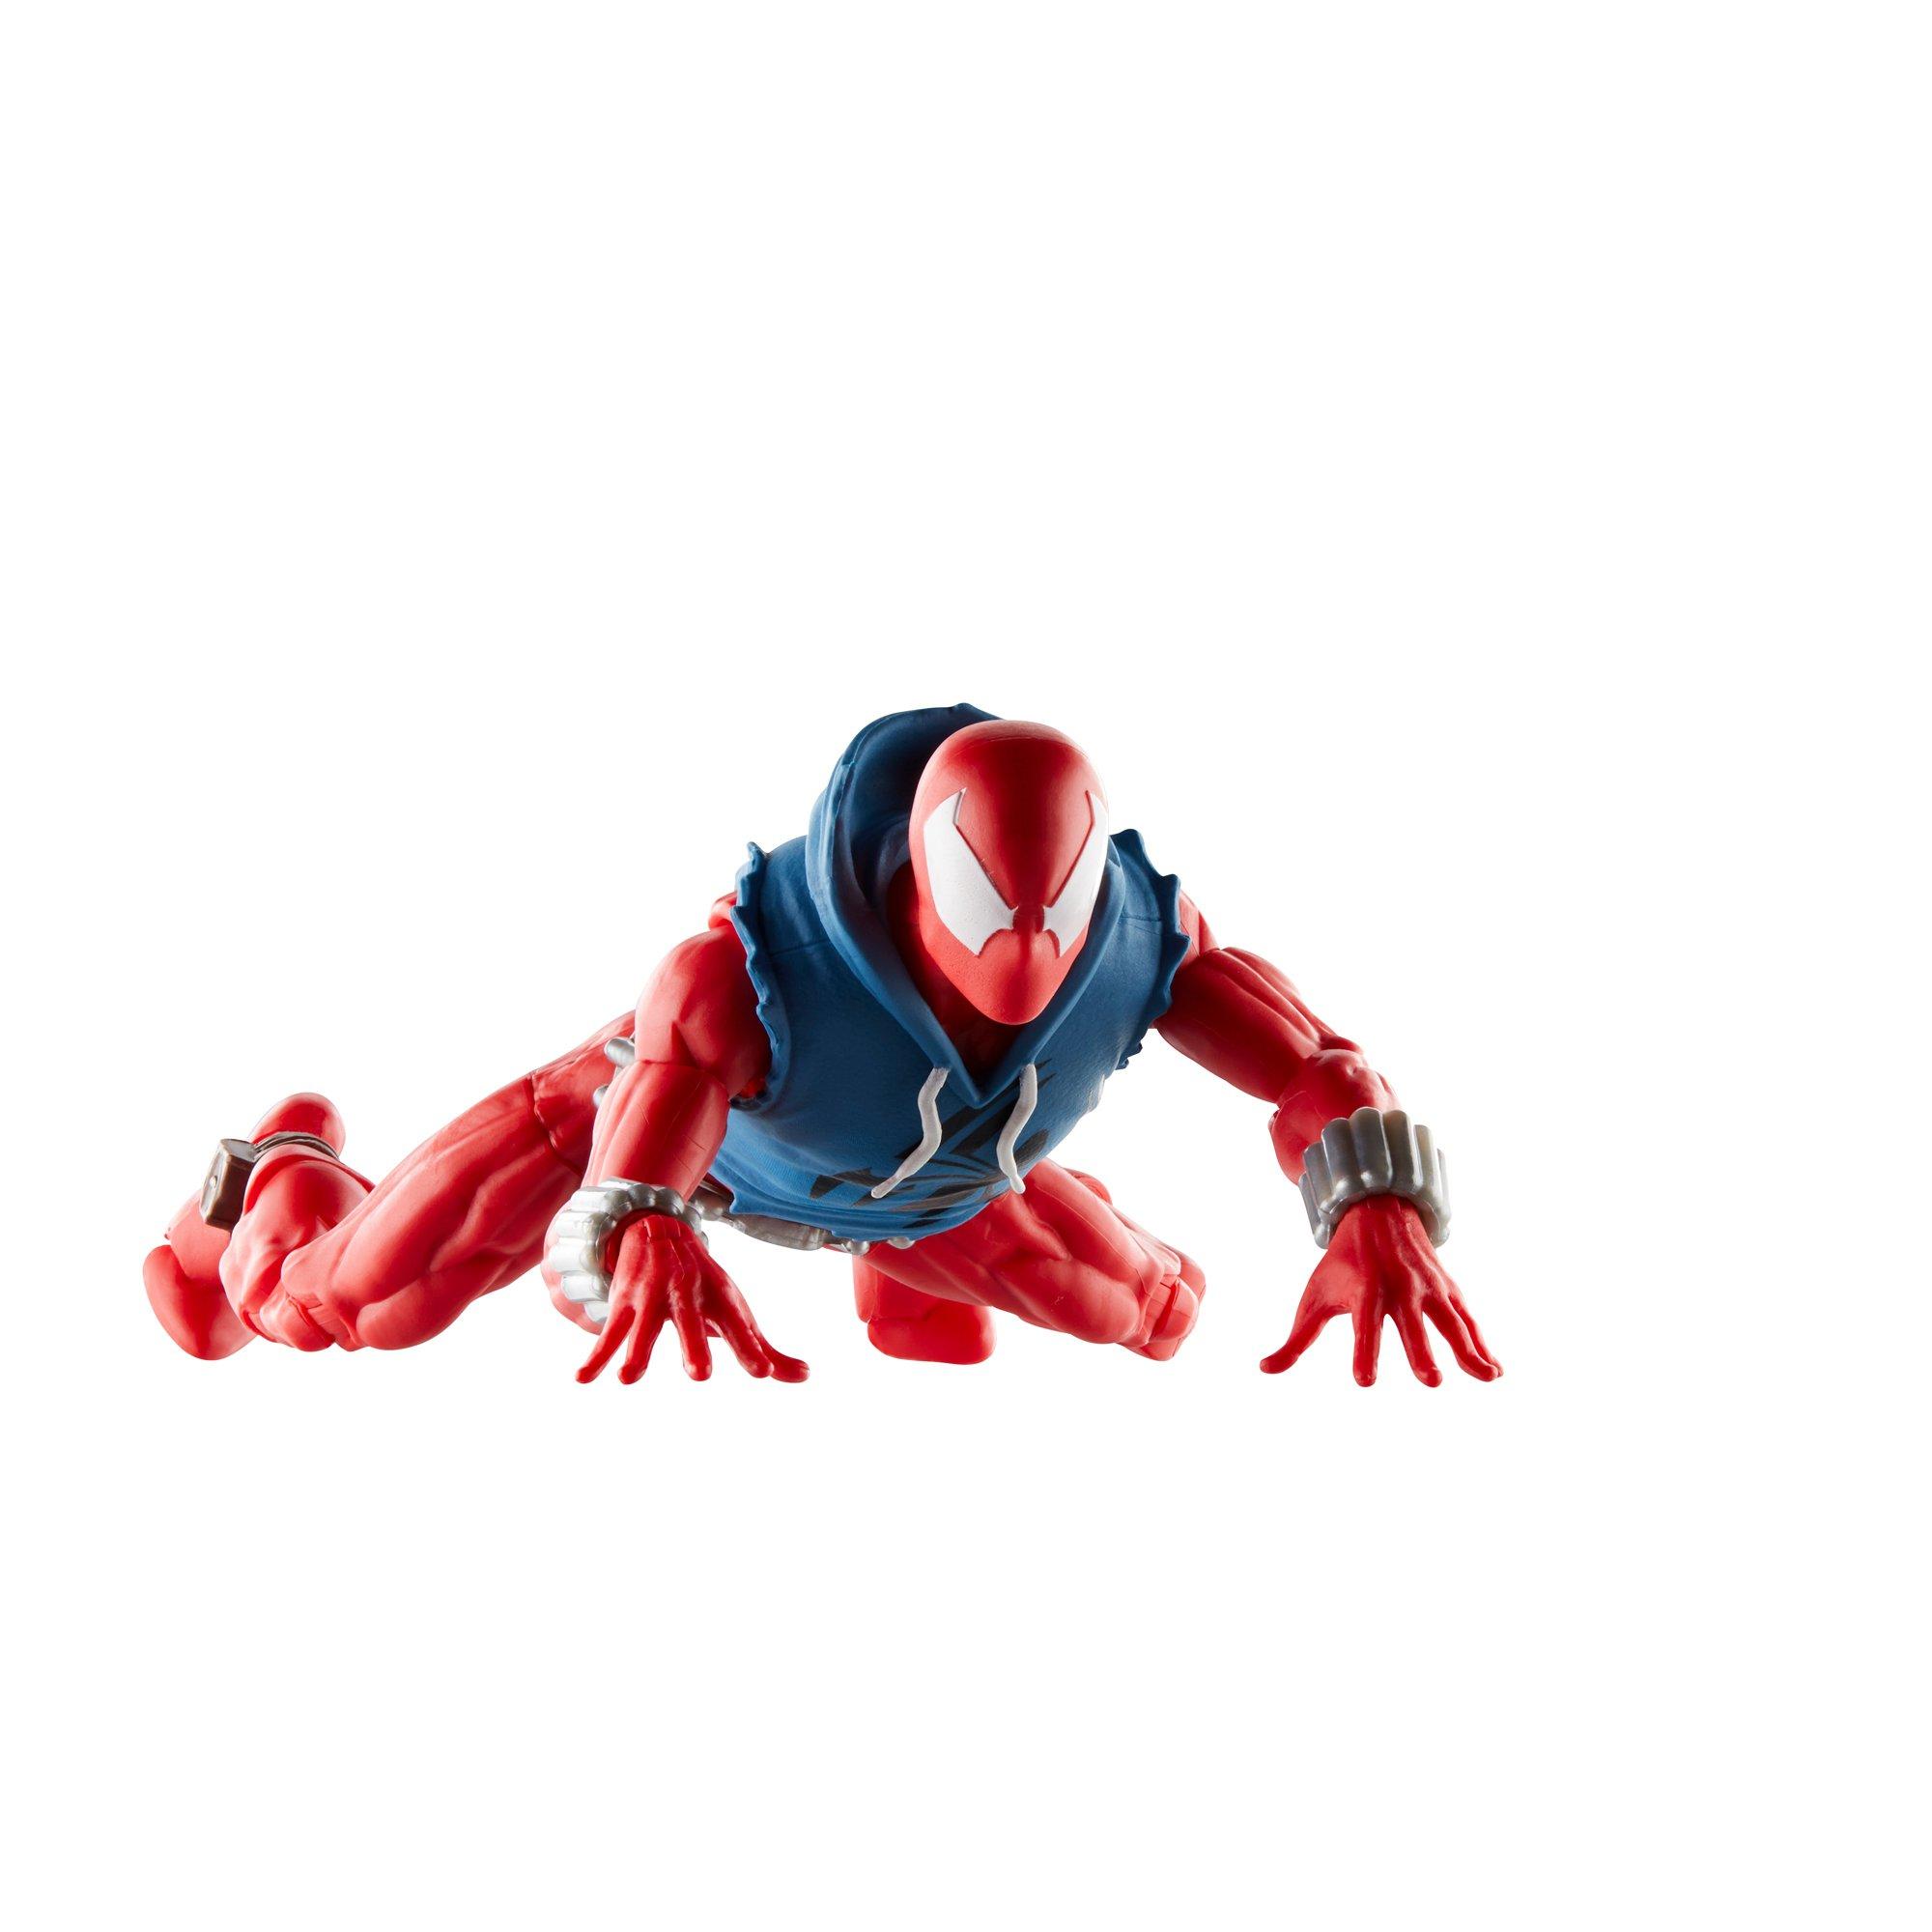 Figurine Ben Reilly Spider-Man Marvel Legends Series